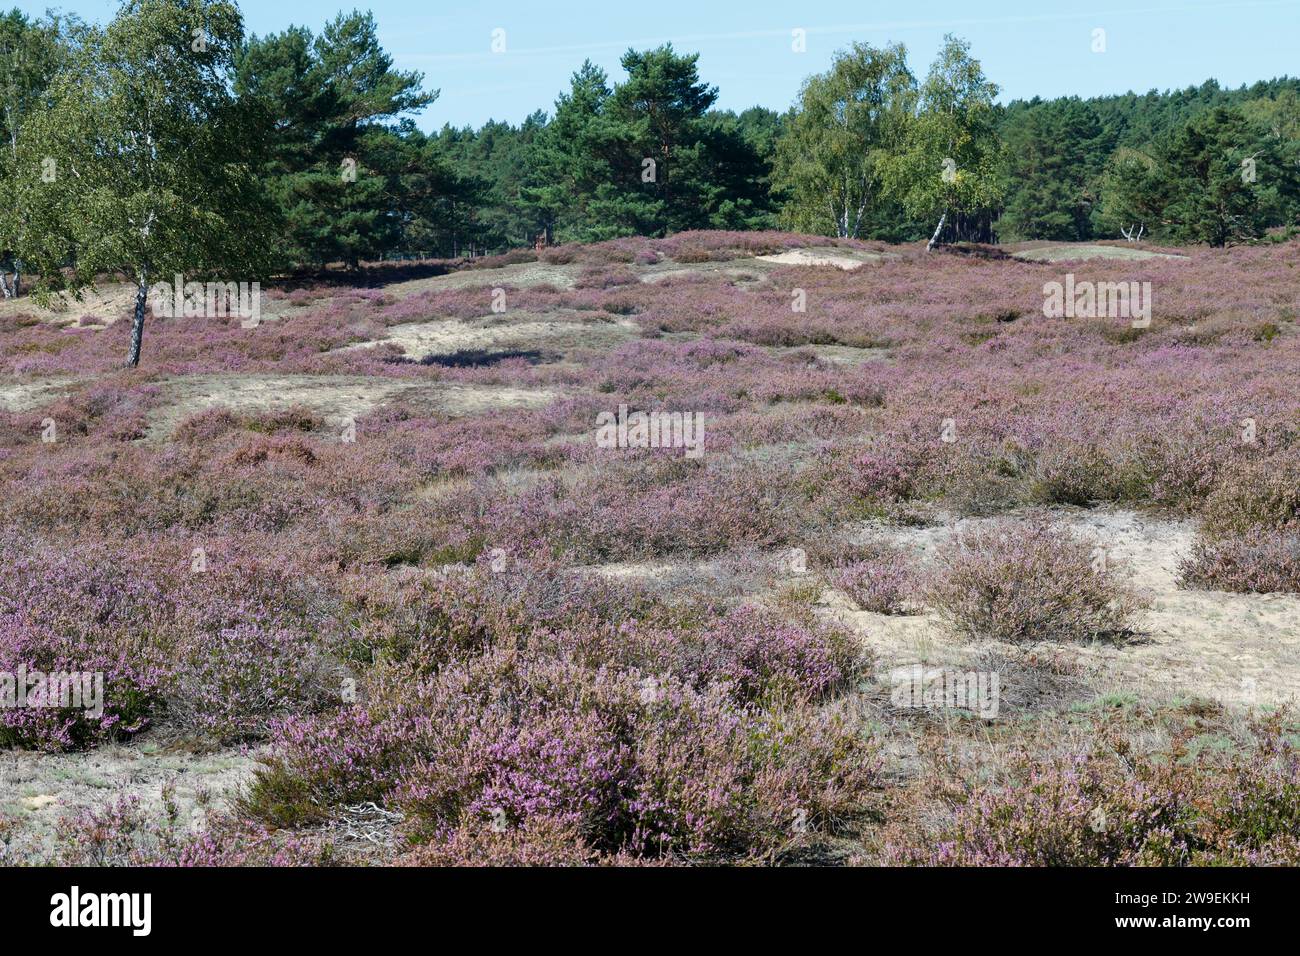 Nemitzer Heide, Heidegebiet im Naturpark Elbhöhen-Wendland, Niedersachsen, Deutschland, Heidelandschaft. Besenheide, Heidekraut, Calluna vulgaris, Com Stock Photo